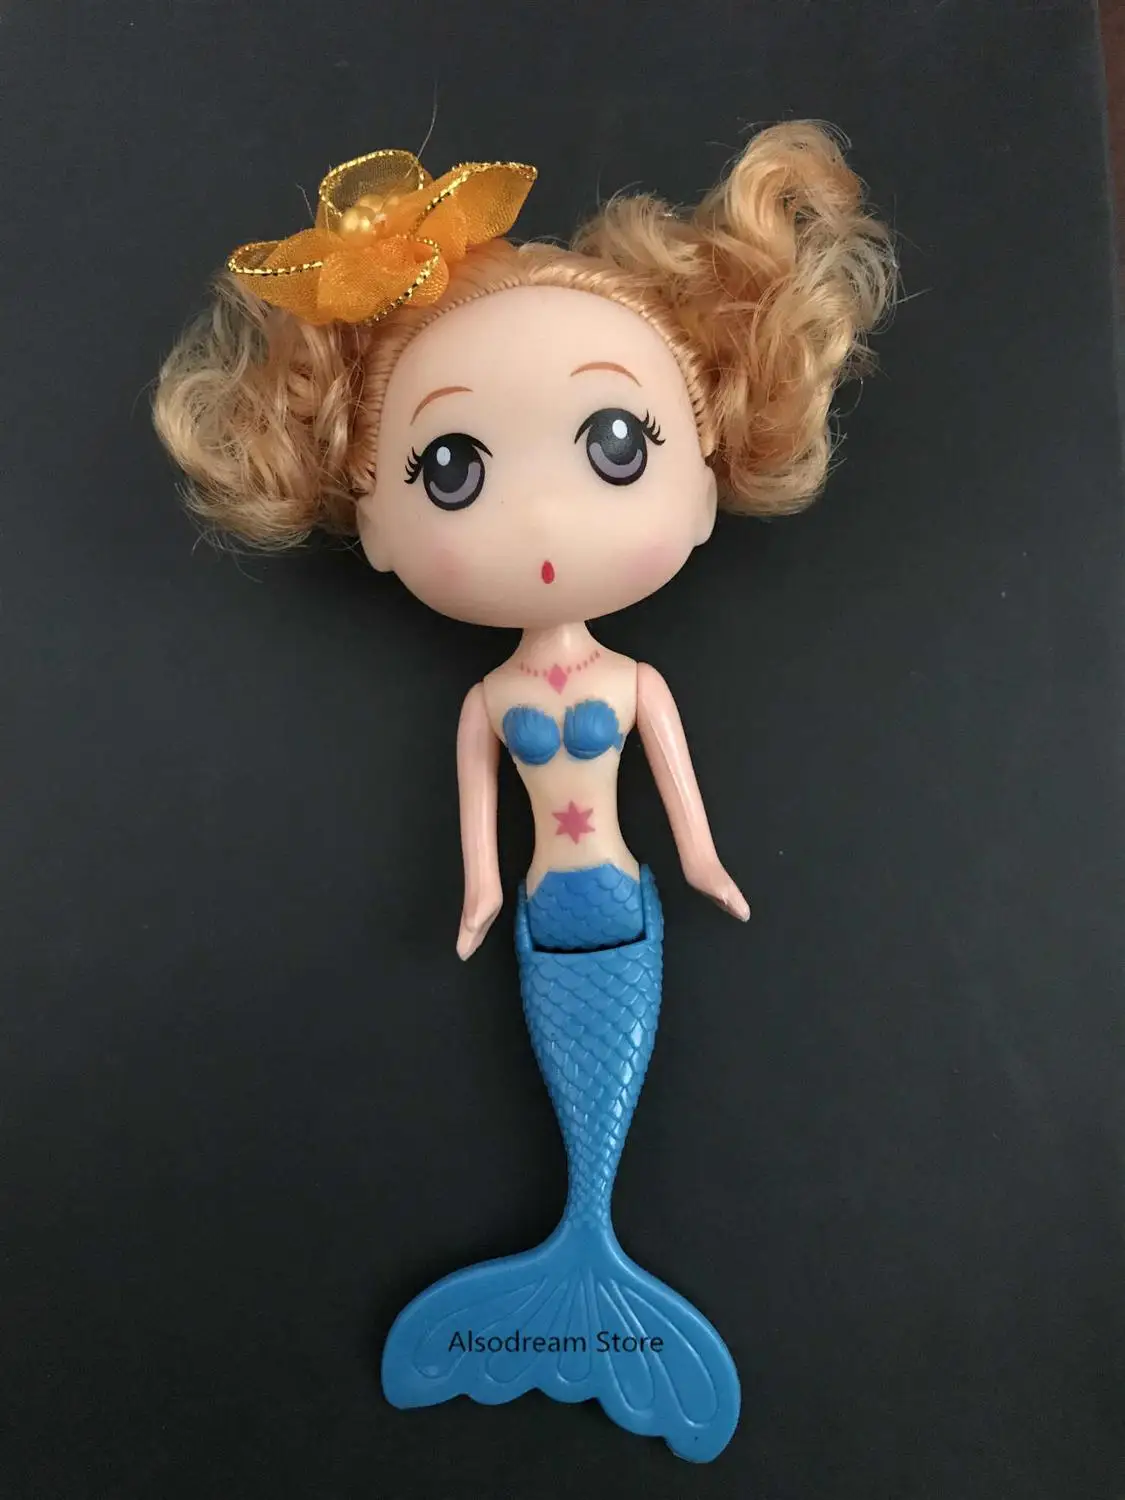 Детский купальный костюм с хвостом русалки для девочек, костюм русалки, купальный костюм, можно добавить монофонический плавник, очки с гирляндой, кукла русалки - Цвет: Blue